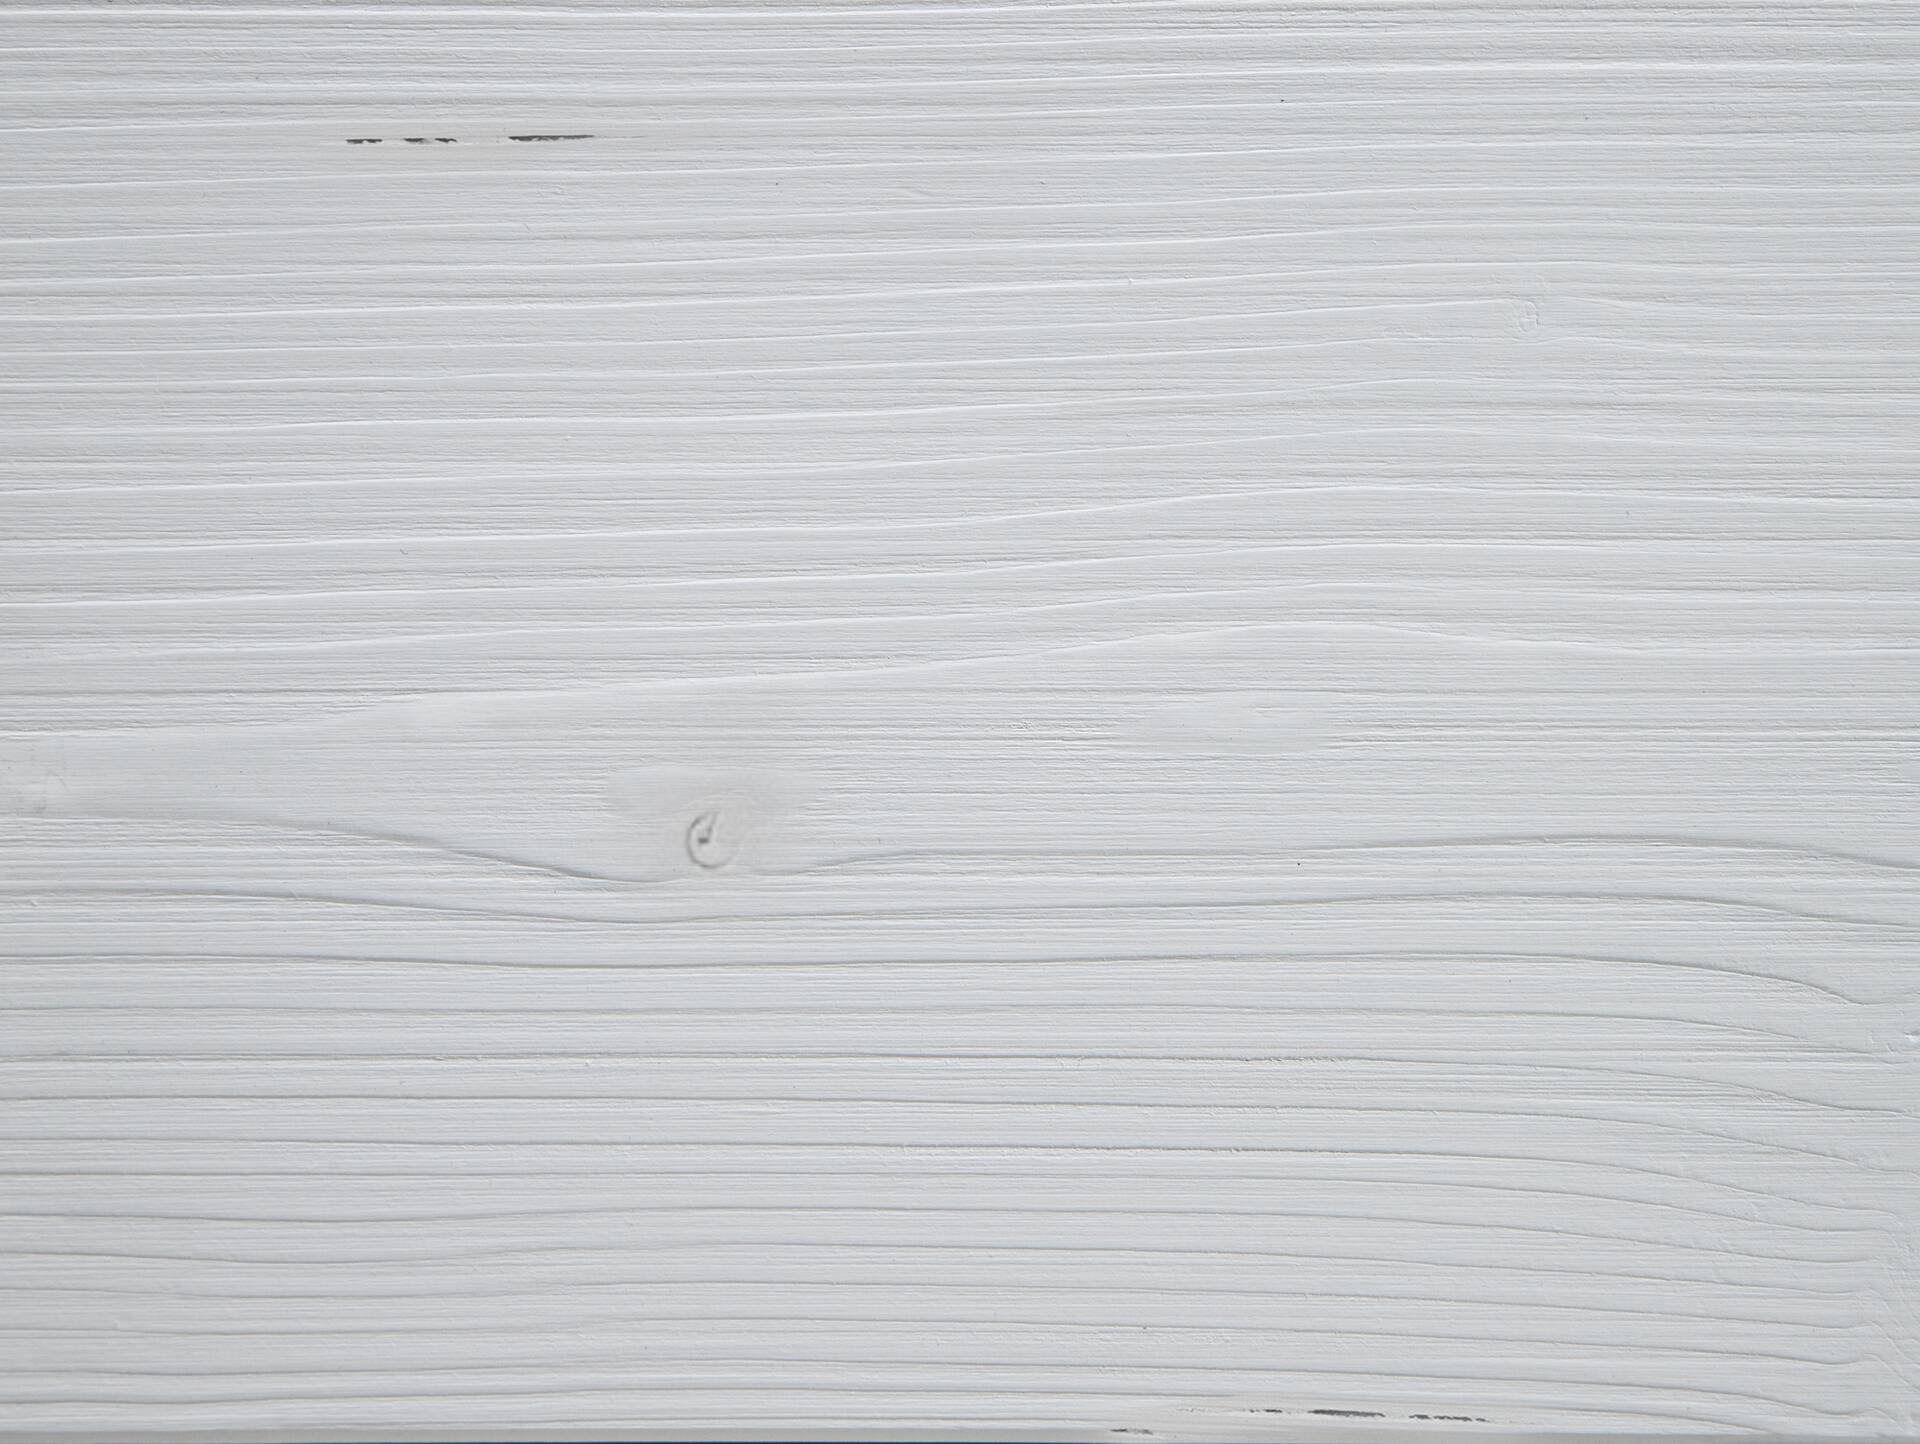 LUKY Kufenbett, Material Massivholz, Fichte massiv, Kufen weiß, mit/ohne Kopfteil 90 x 220 cm | weiss | ohne Kopfteil